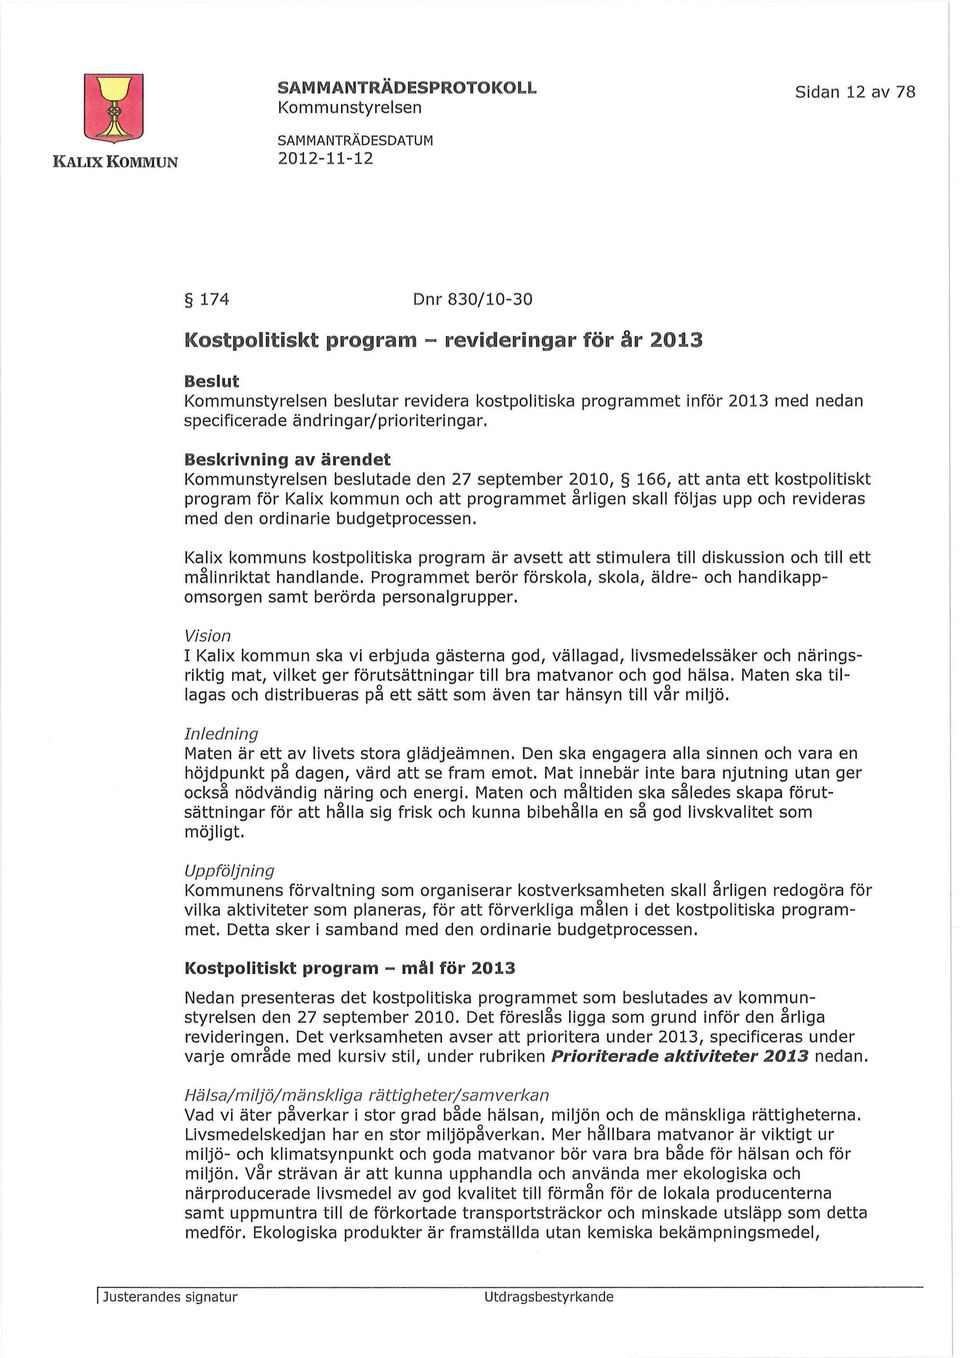 Beskrivning av ärendet beslutade den 27 september 2010, 166, att anta ett kostpolitiskt program för Kalix kommun och att programmet årligen skall följas upp och revideras med den ordinarie